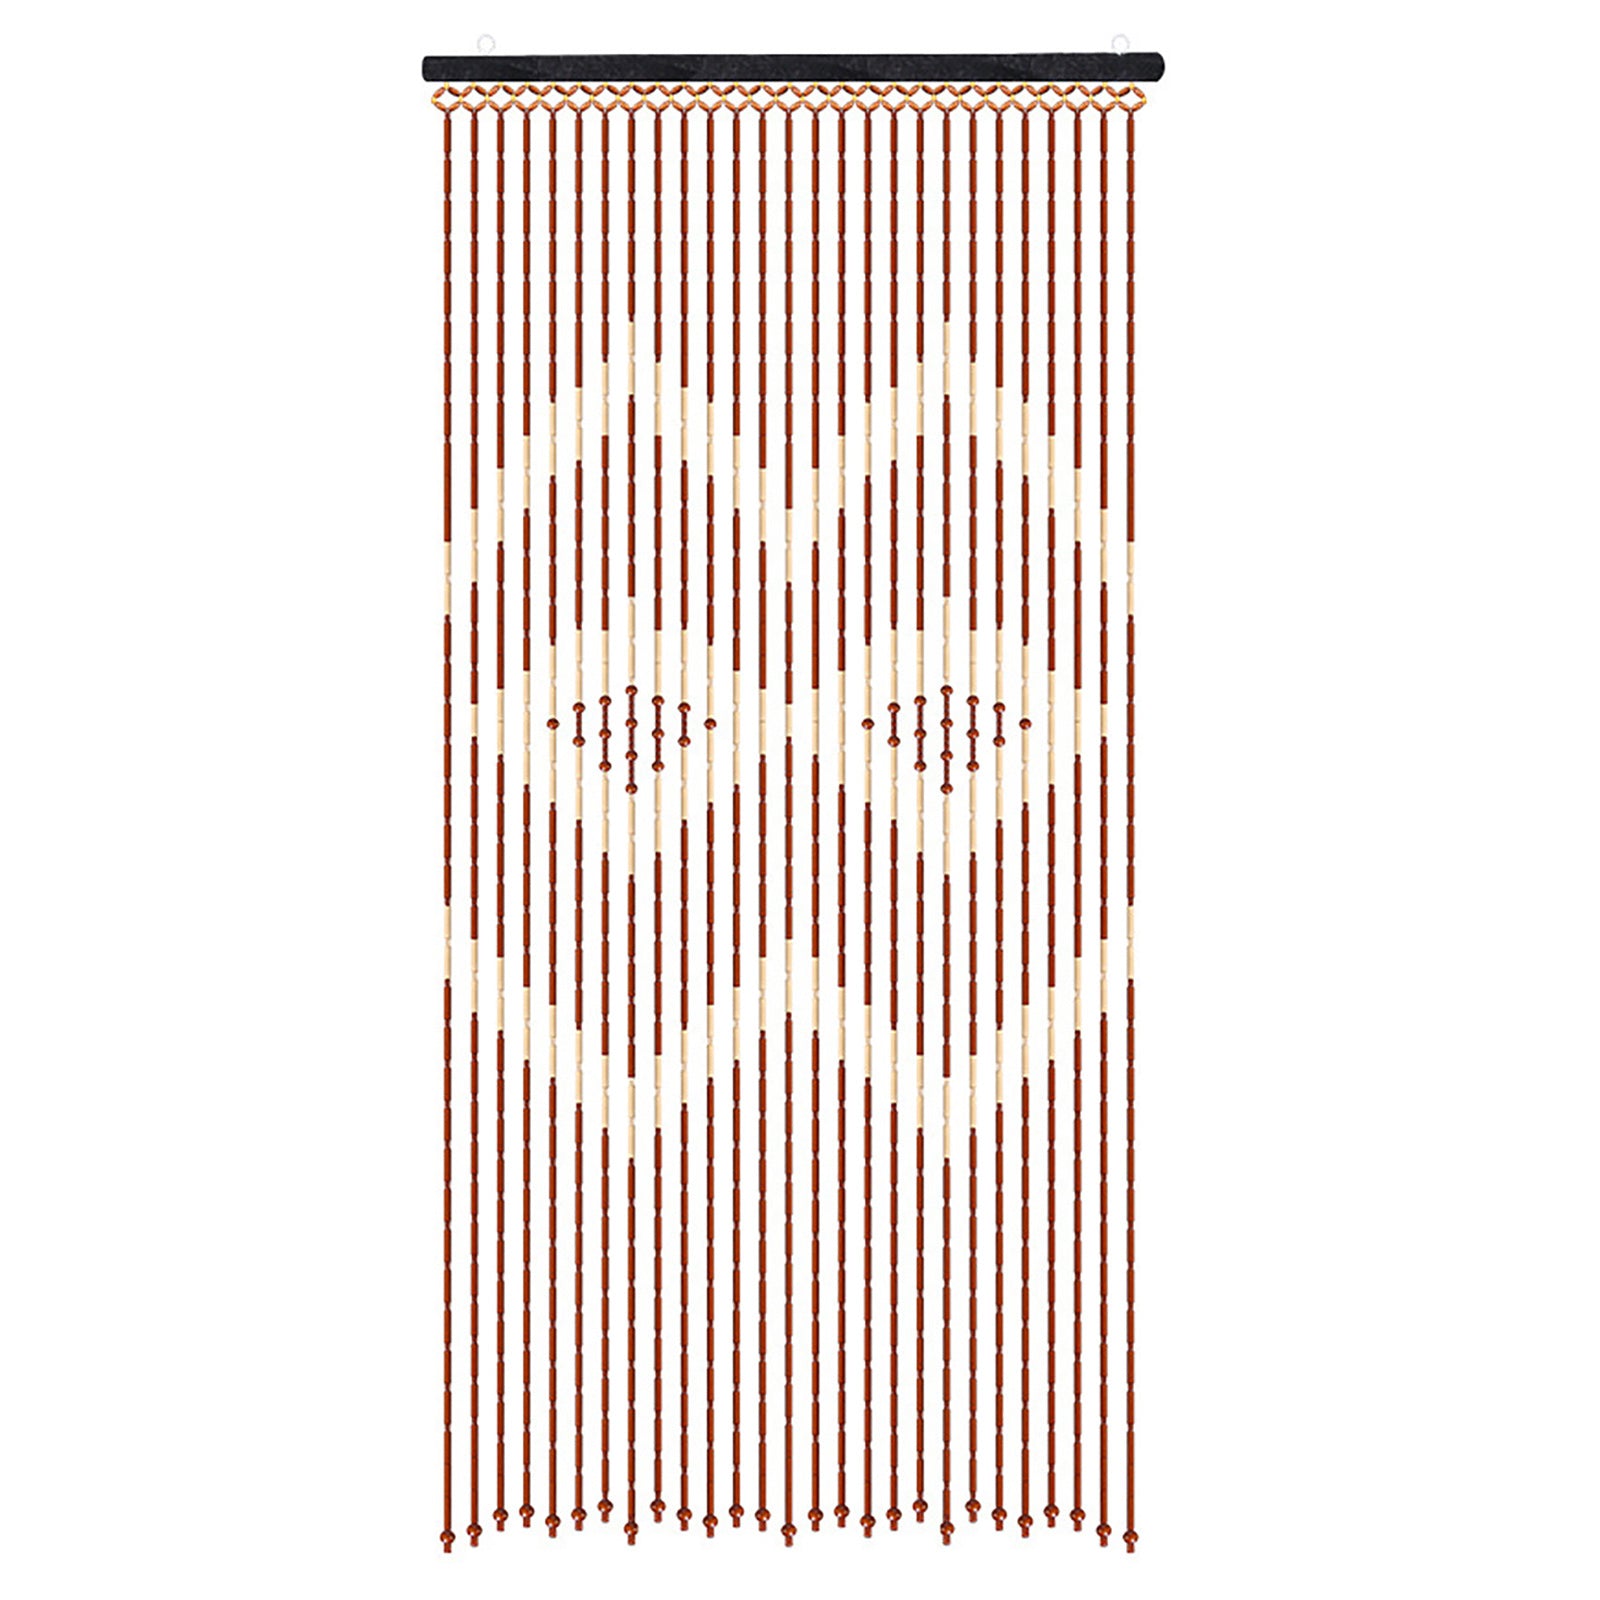 Tenda per porta con perline di legno, tenda a fili in legno, tenda a strisce, divisorio, decorazione linea Porch Curtain, 27 fili, 90 x 175 cm